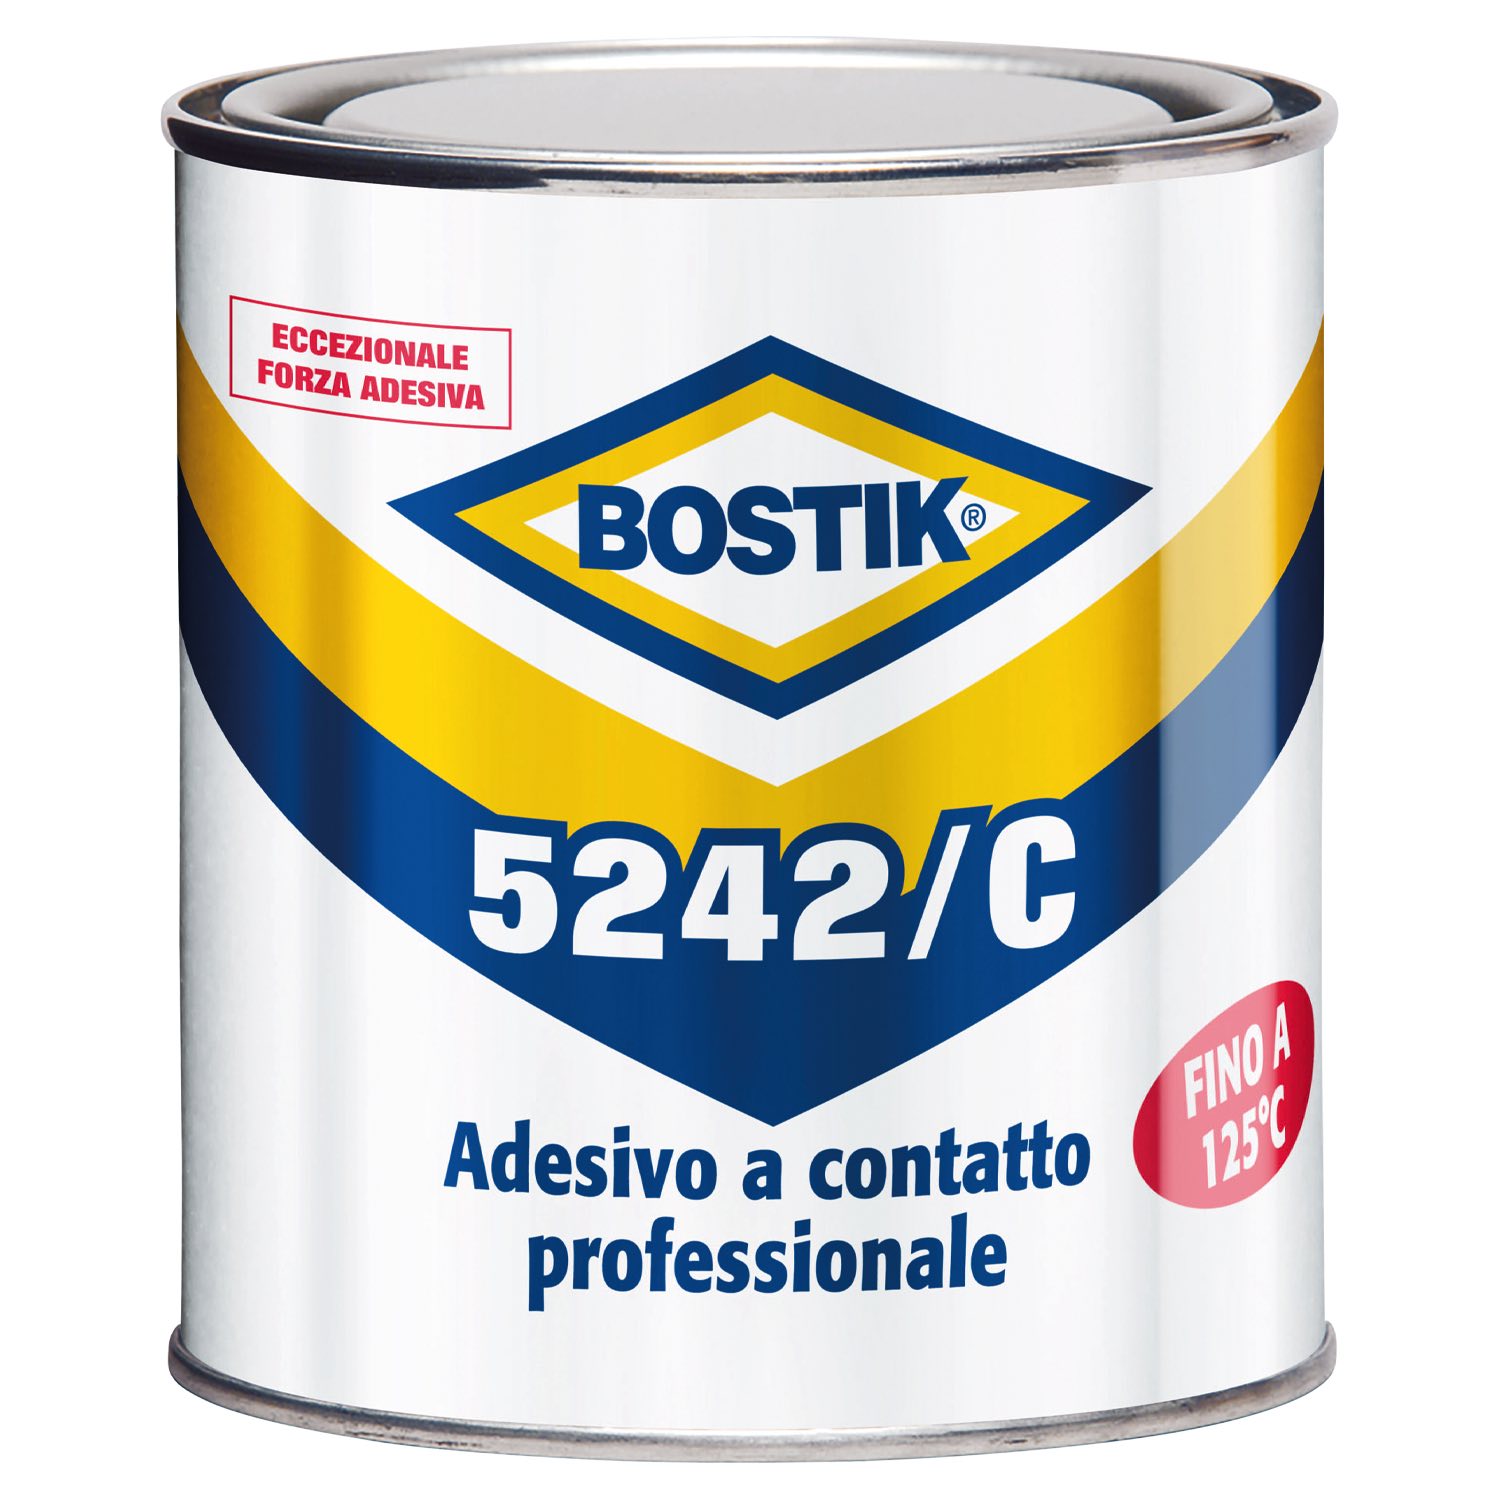 Bostik, il professionista di adesivi e sigillanti